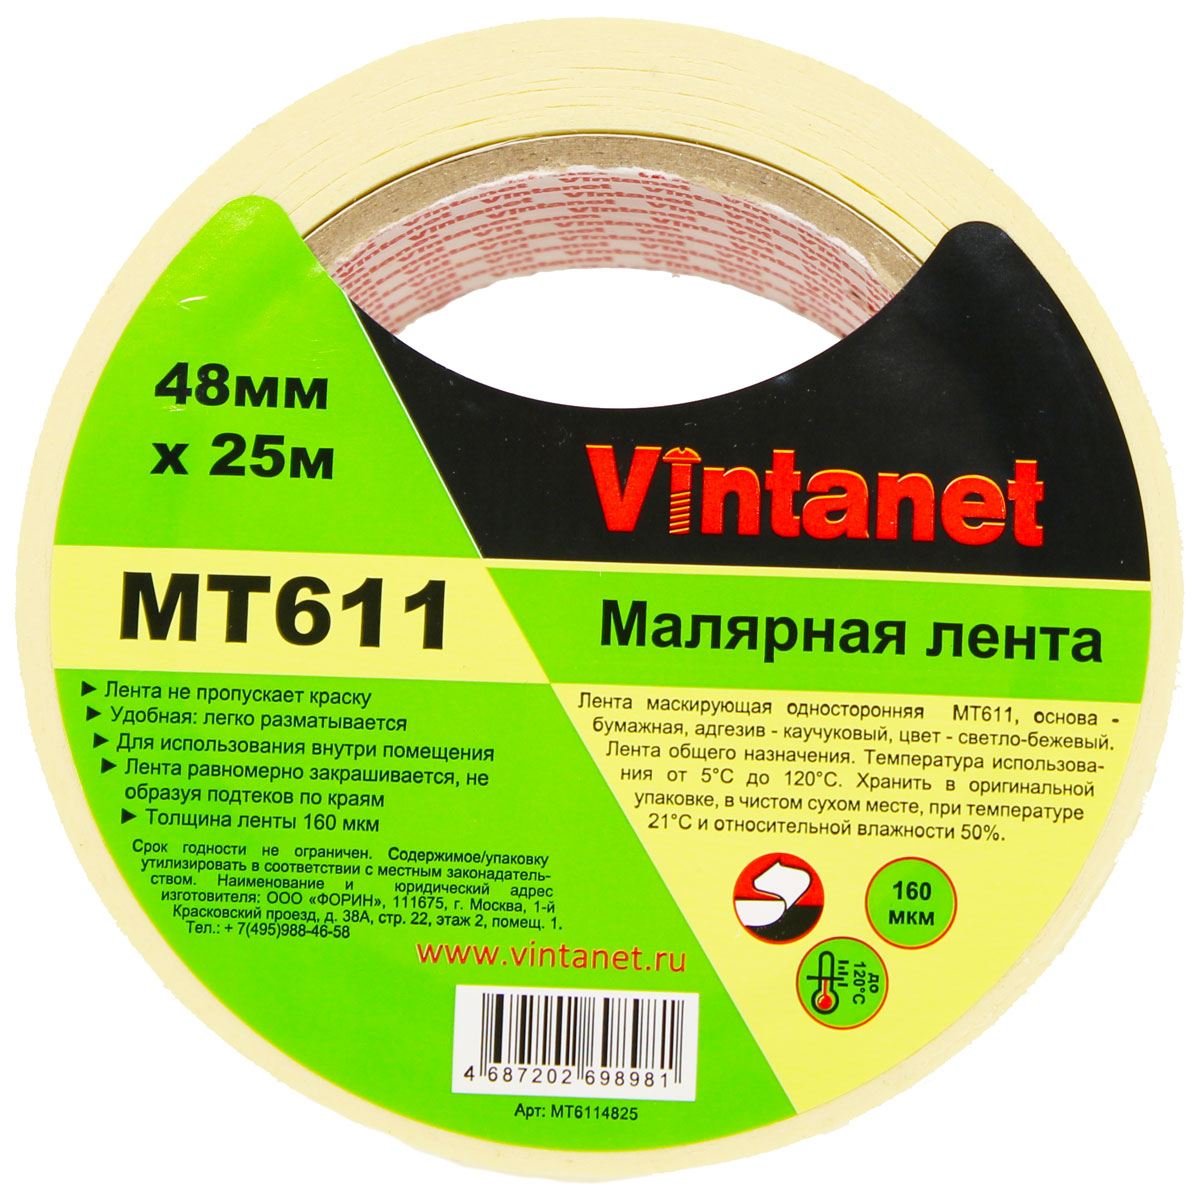 Лента малярная высокотемпературная Vintanet MT611, 120 С, 160 мкм, 48мм х 25м, MT6114825 бумажная малярная лента klebebander